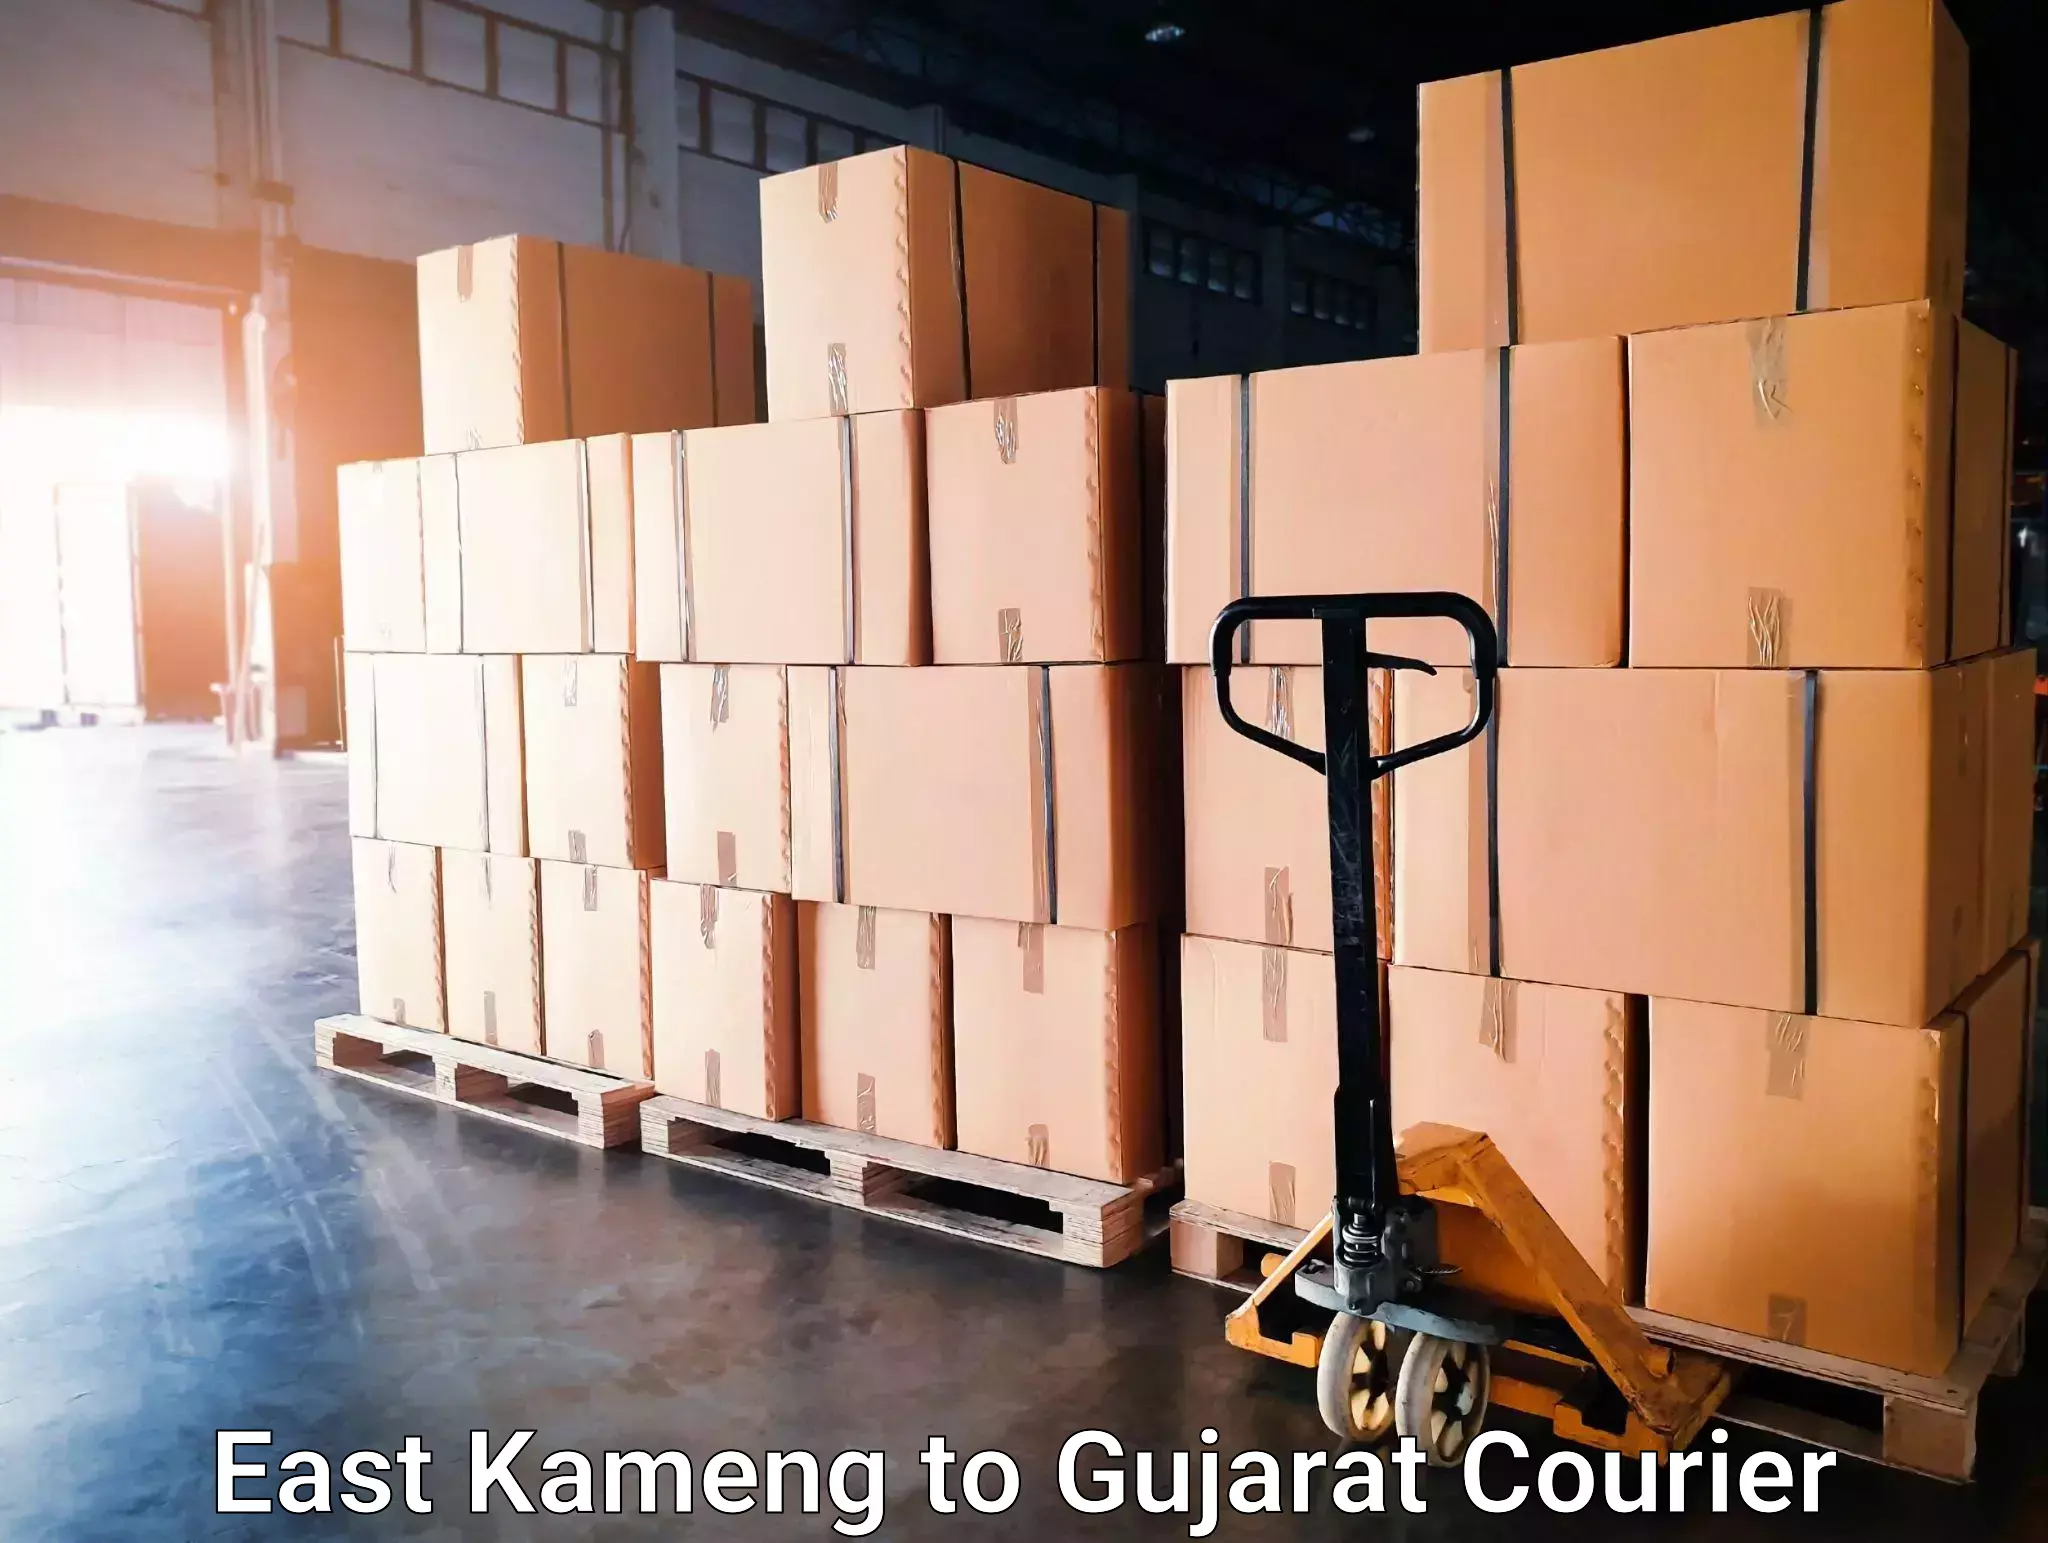 High-speed parcel service East Kameng to Matar